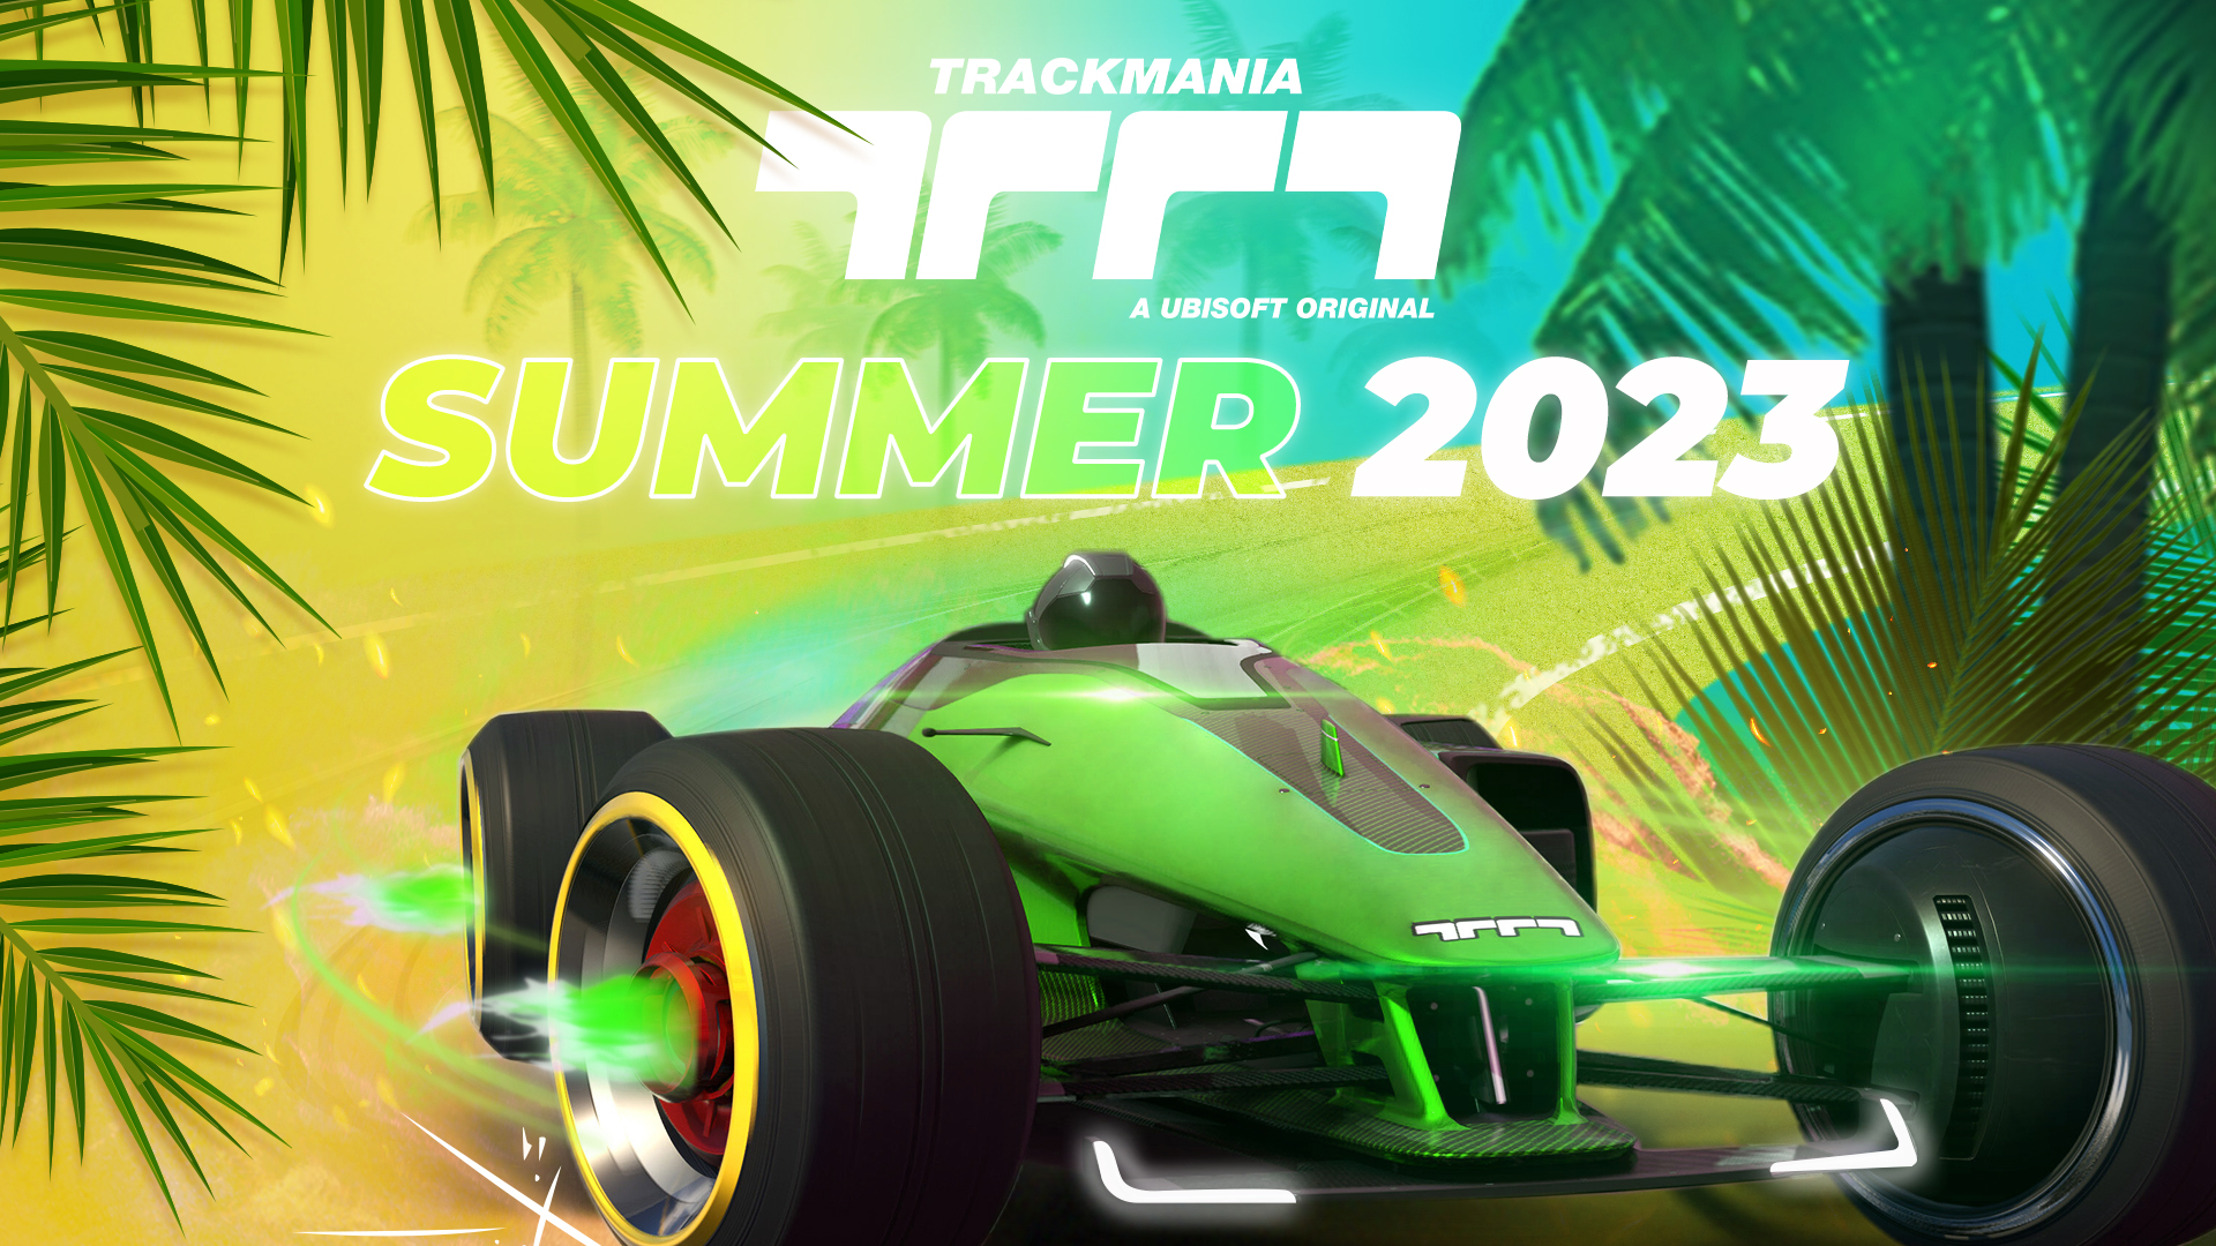 Preview: Trackmania® feiert den Sommer mit dem Start einer neuen Kampagne am 1. Juli